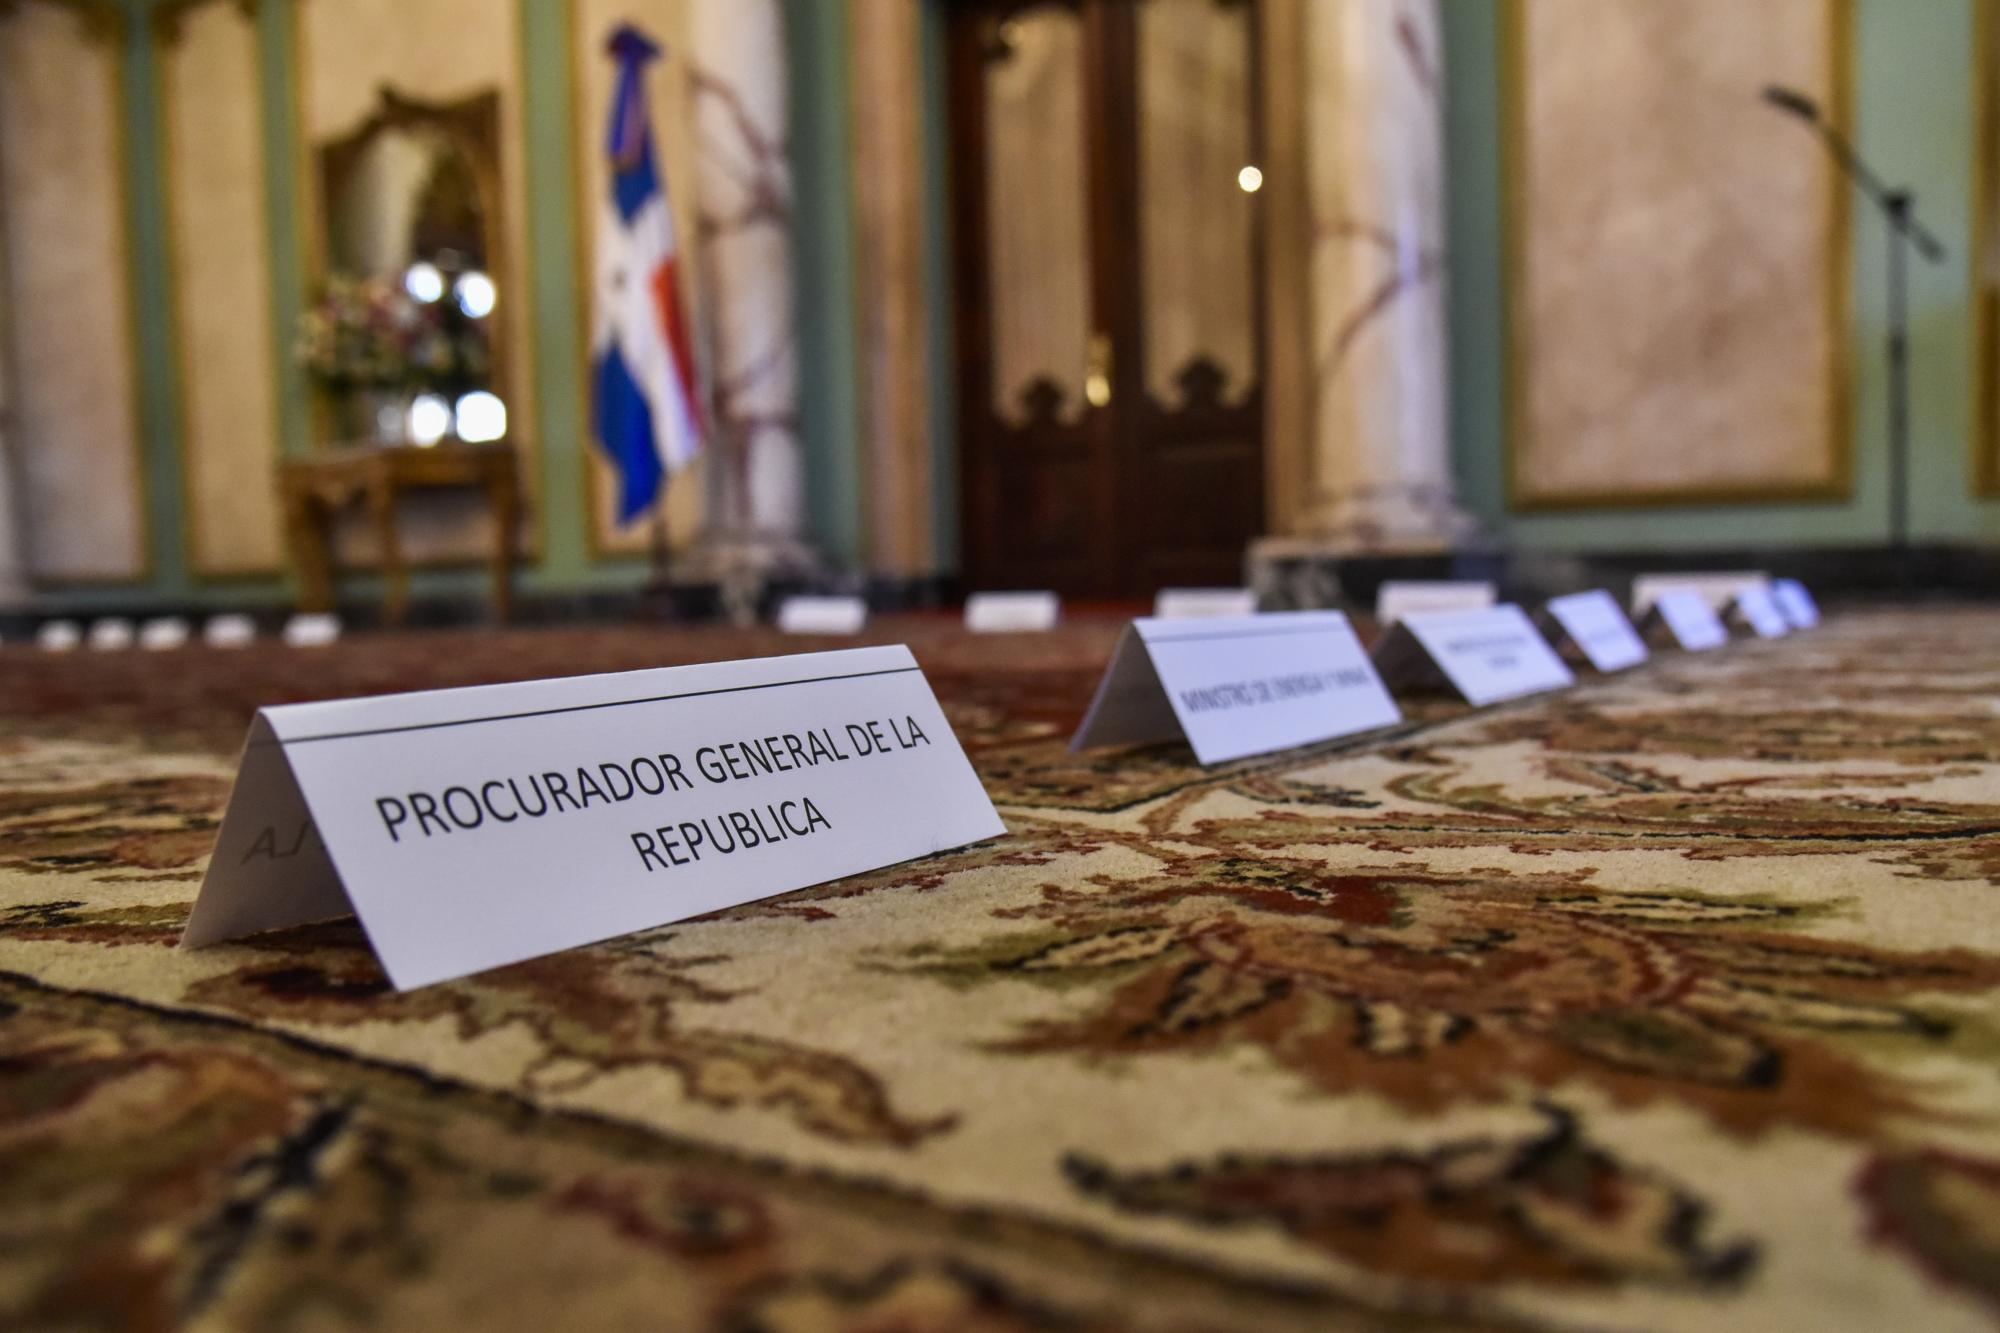 Letreros colocados en el piso indicaban el lugar que ocuparían los nuevos funcionarios durante el acto de juramentación en el Palacio Nacional, el 16 de agosto de 2016.